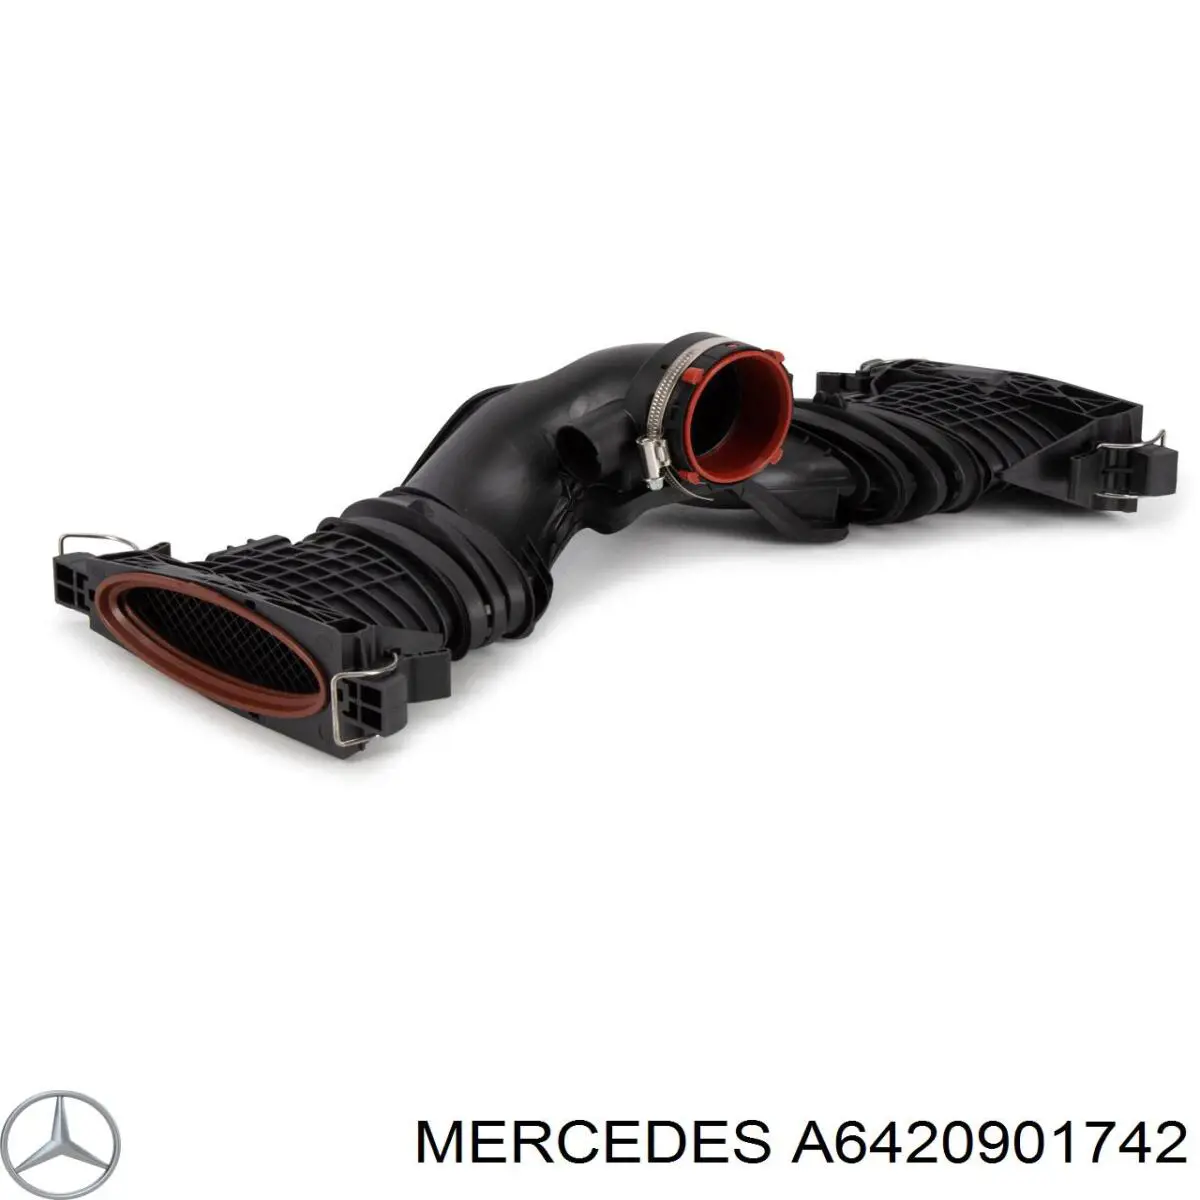 A6420901742 Mercedes sensor de fluxo (consumo de ar, medidor de consumo M.A.F. - (Mass Airflow))